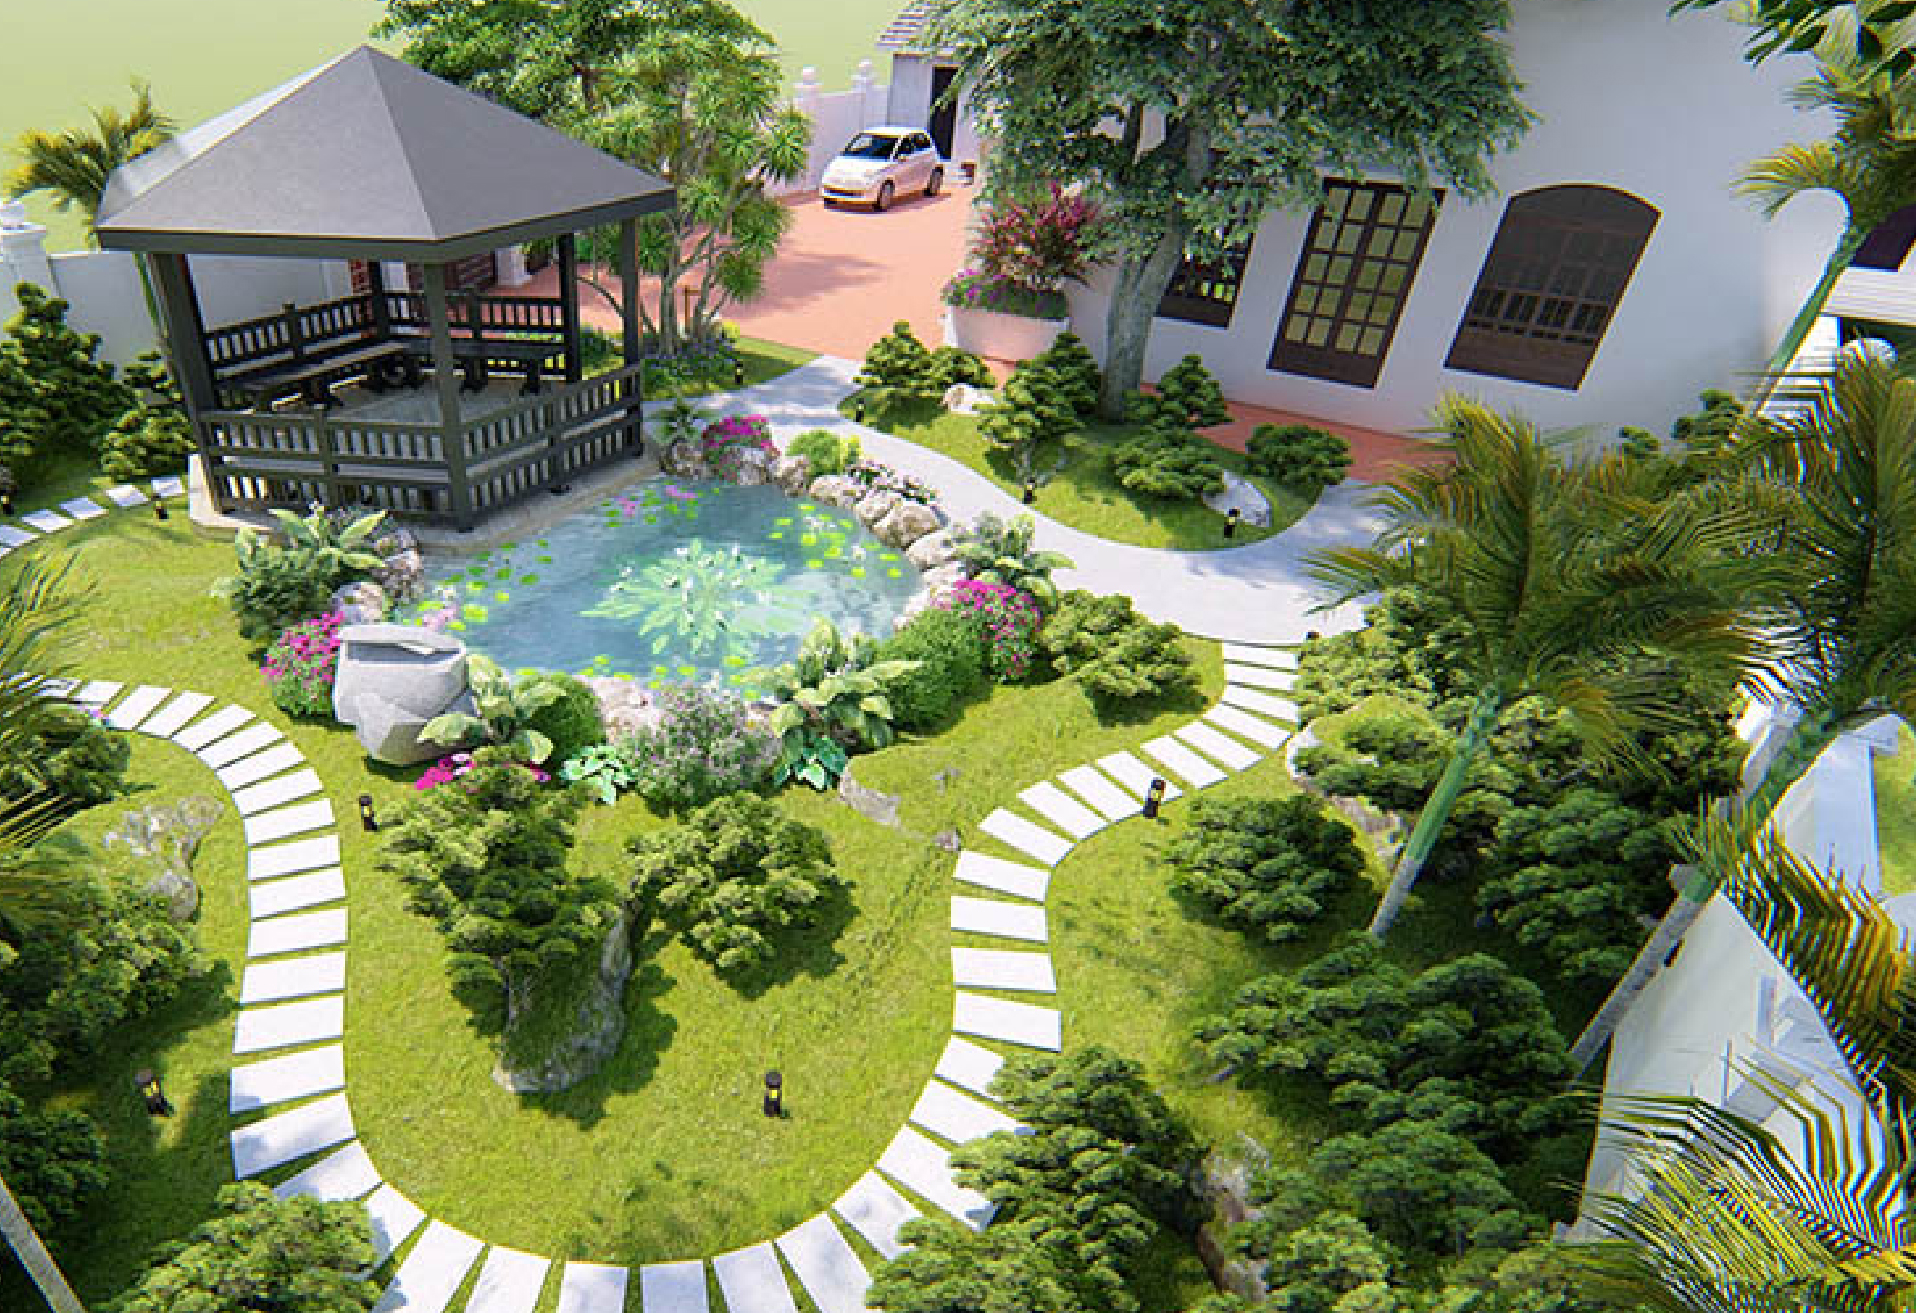 Thiết kế biệt thự sân vườn 2 tầng 10x25 kiến trúc Nhật đẹp